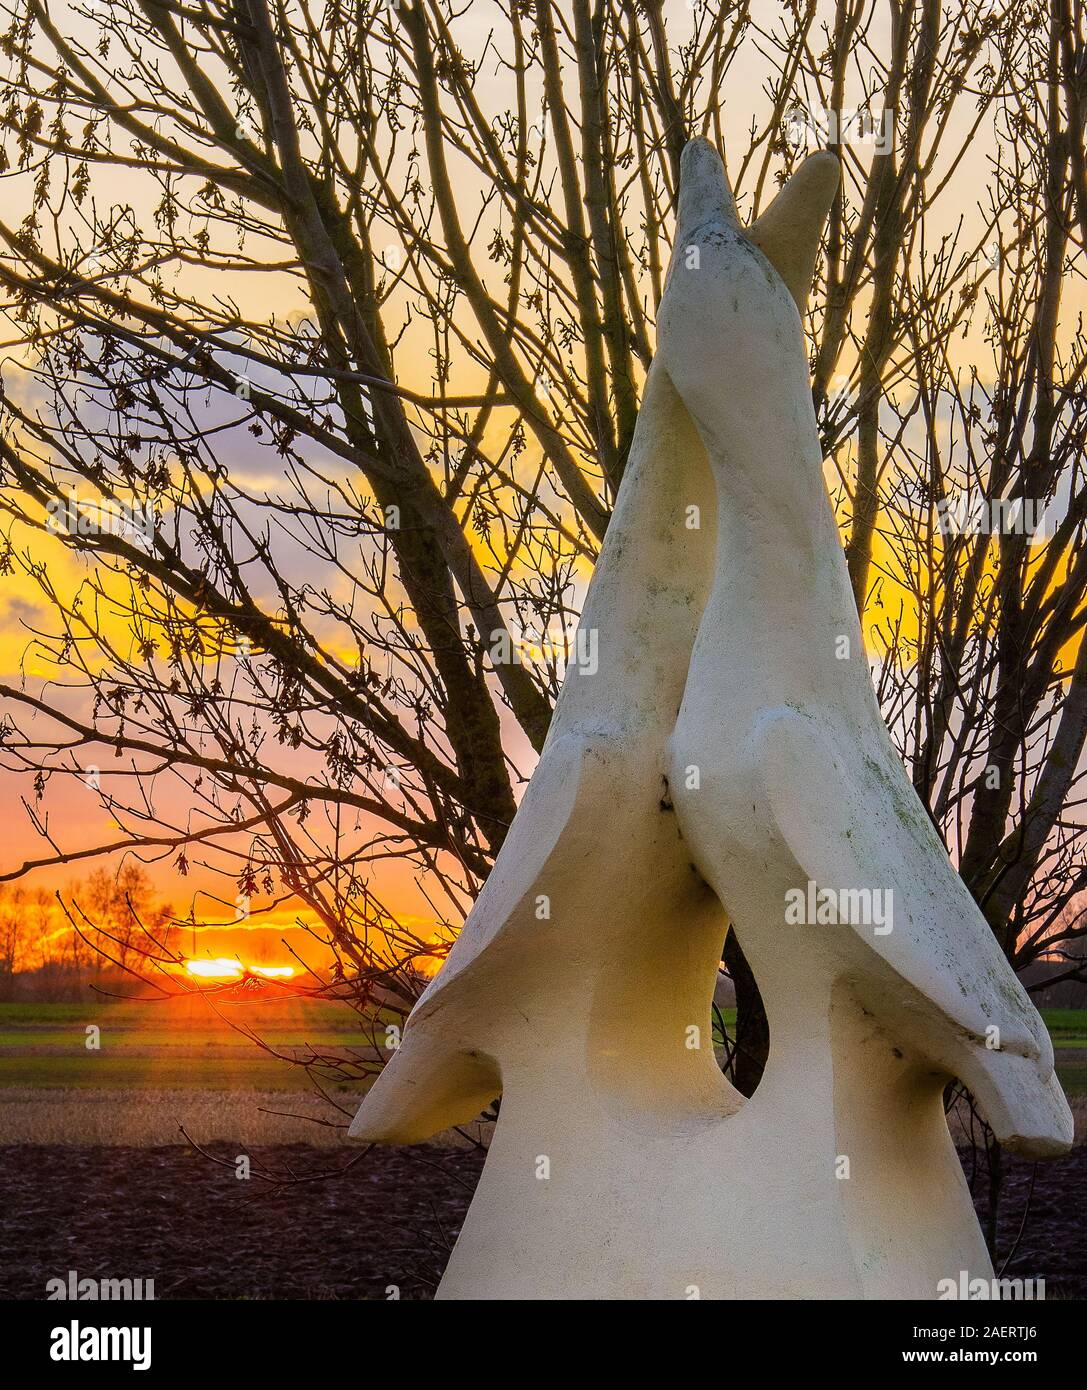 Maison de la baie de Somme et de l'oiseau, monumento en pierre représentant des oiseaux, au soleil couchant, hauts de france, picardie Maritime. Foto Stock